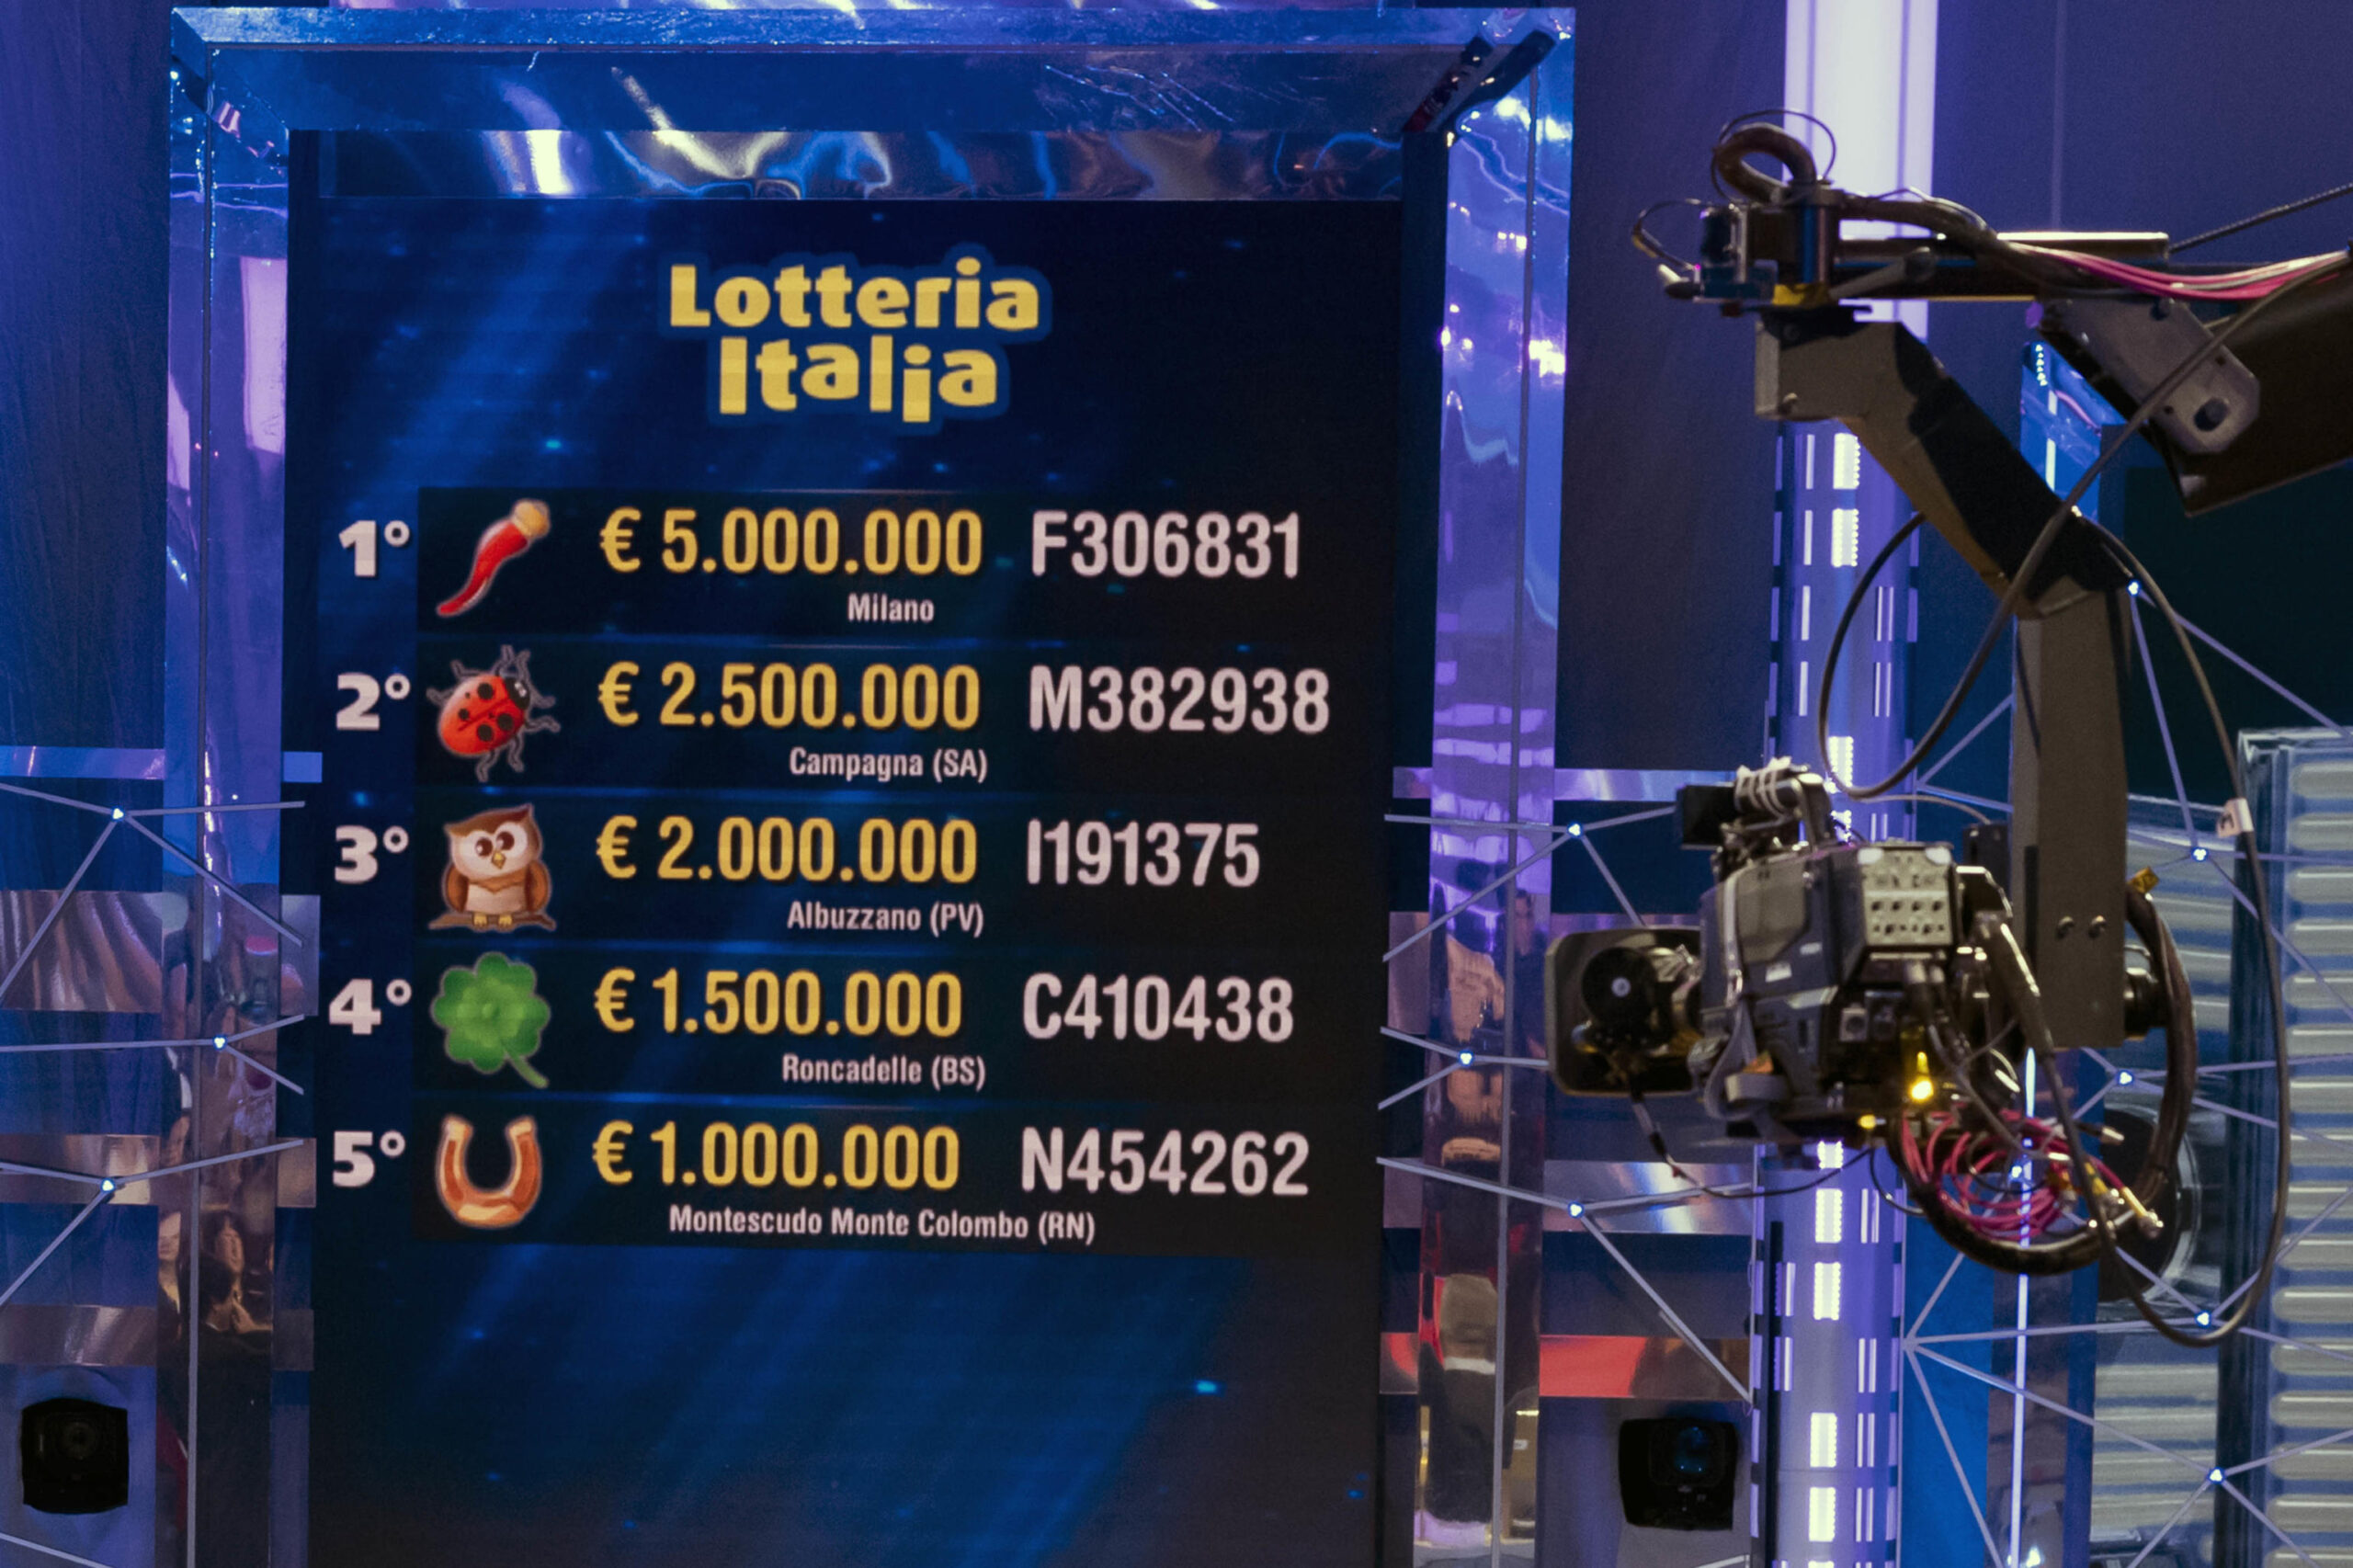 Lotteria Italia, Lombardia baciata dalla fortuna. I 5 milioni a Milano